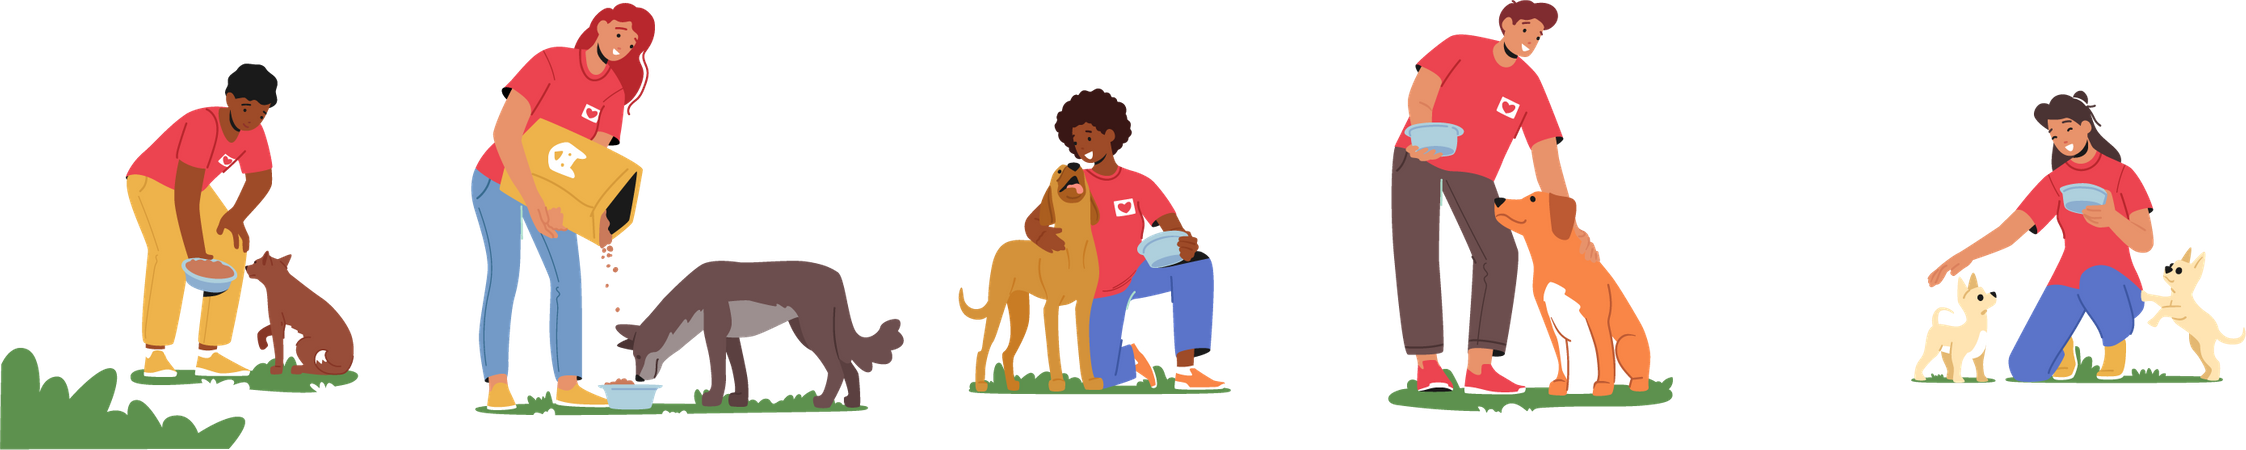 Volunteers feeding dogs  Illustration